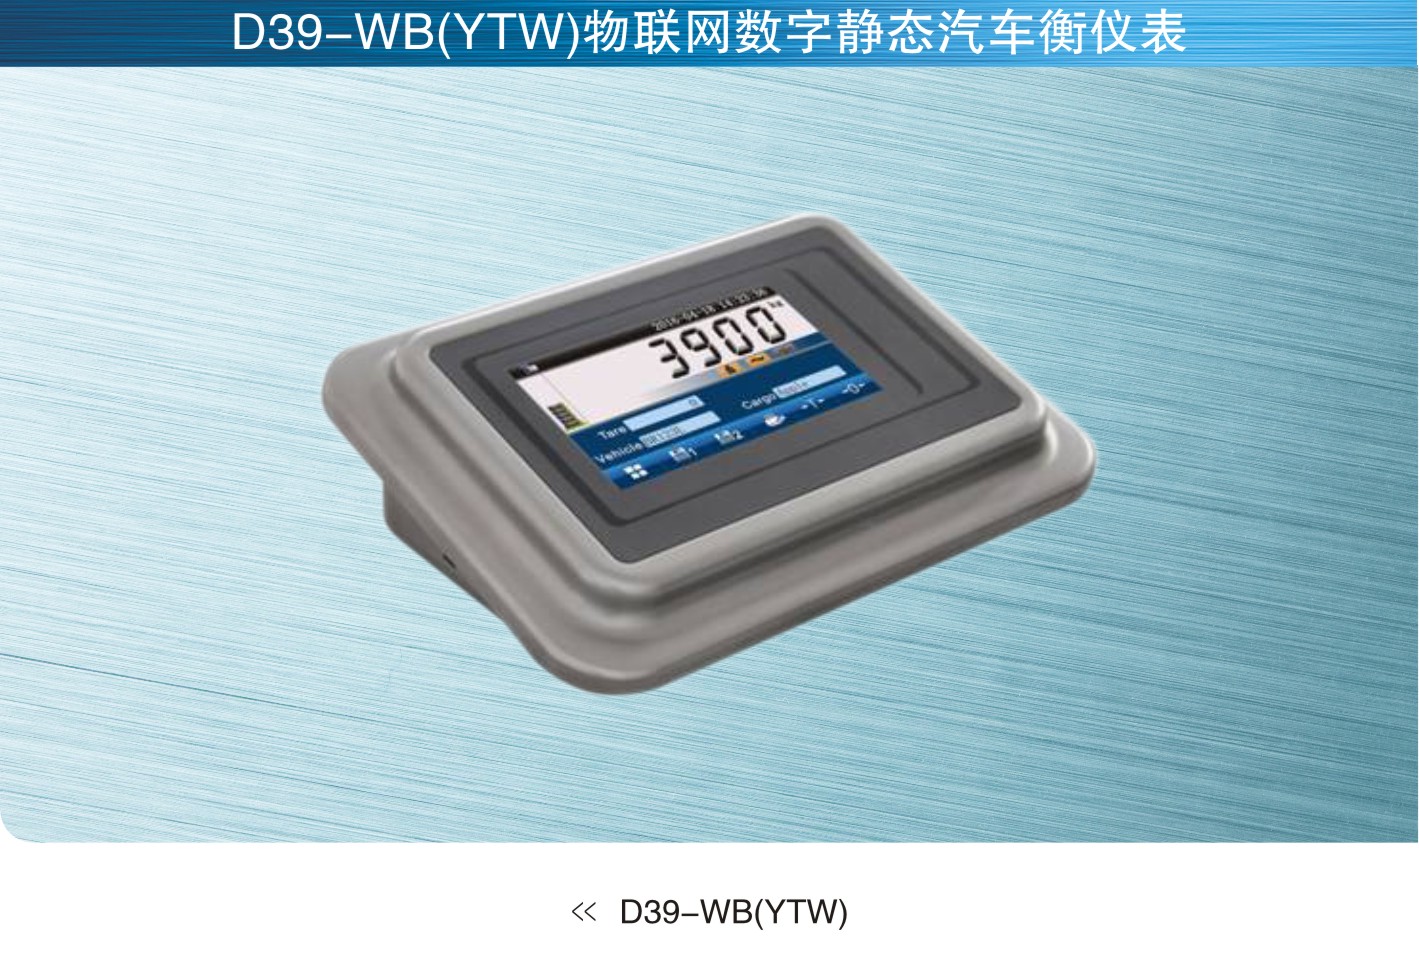 柯力keli D39-WB(YTW)物联网汽车衡仪表